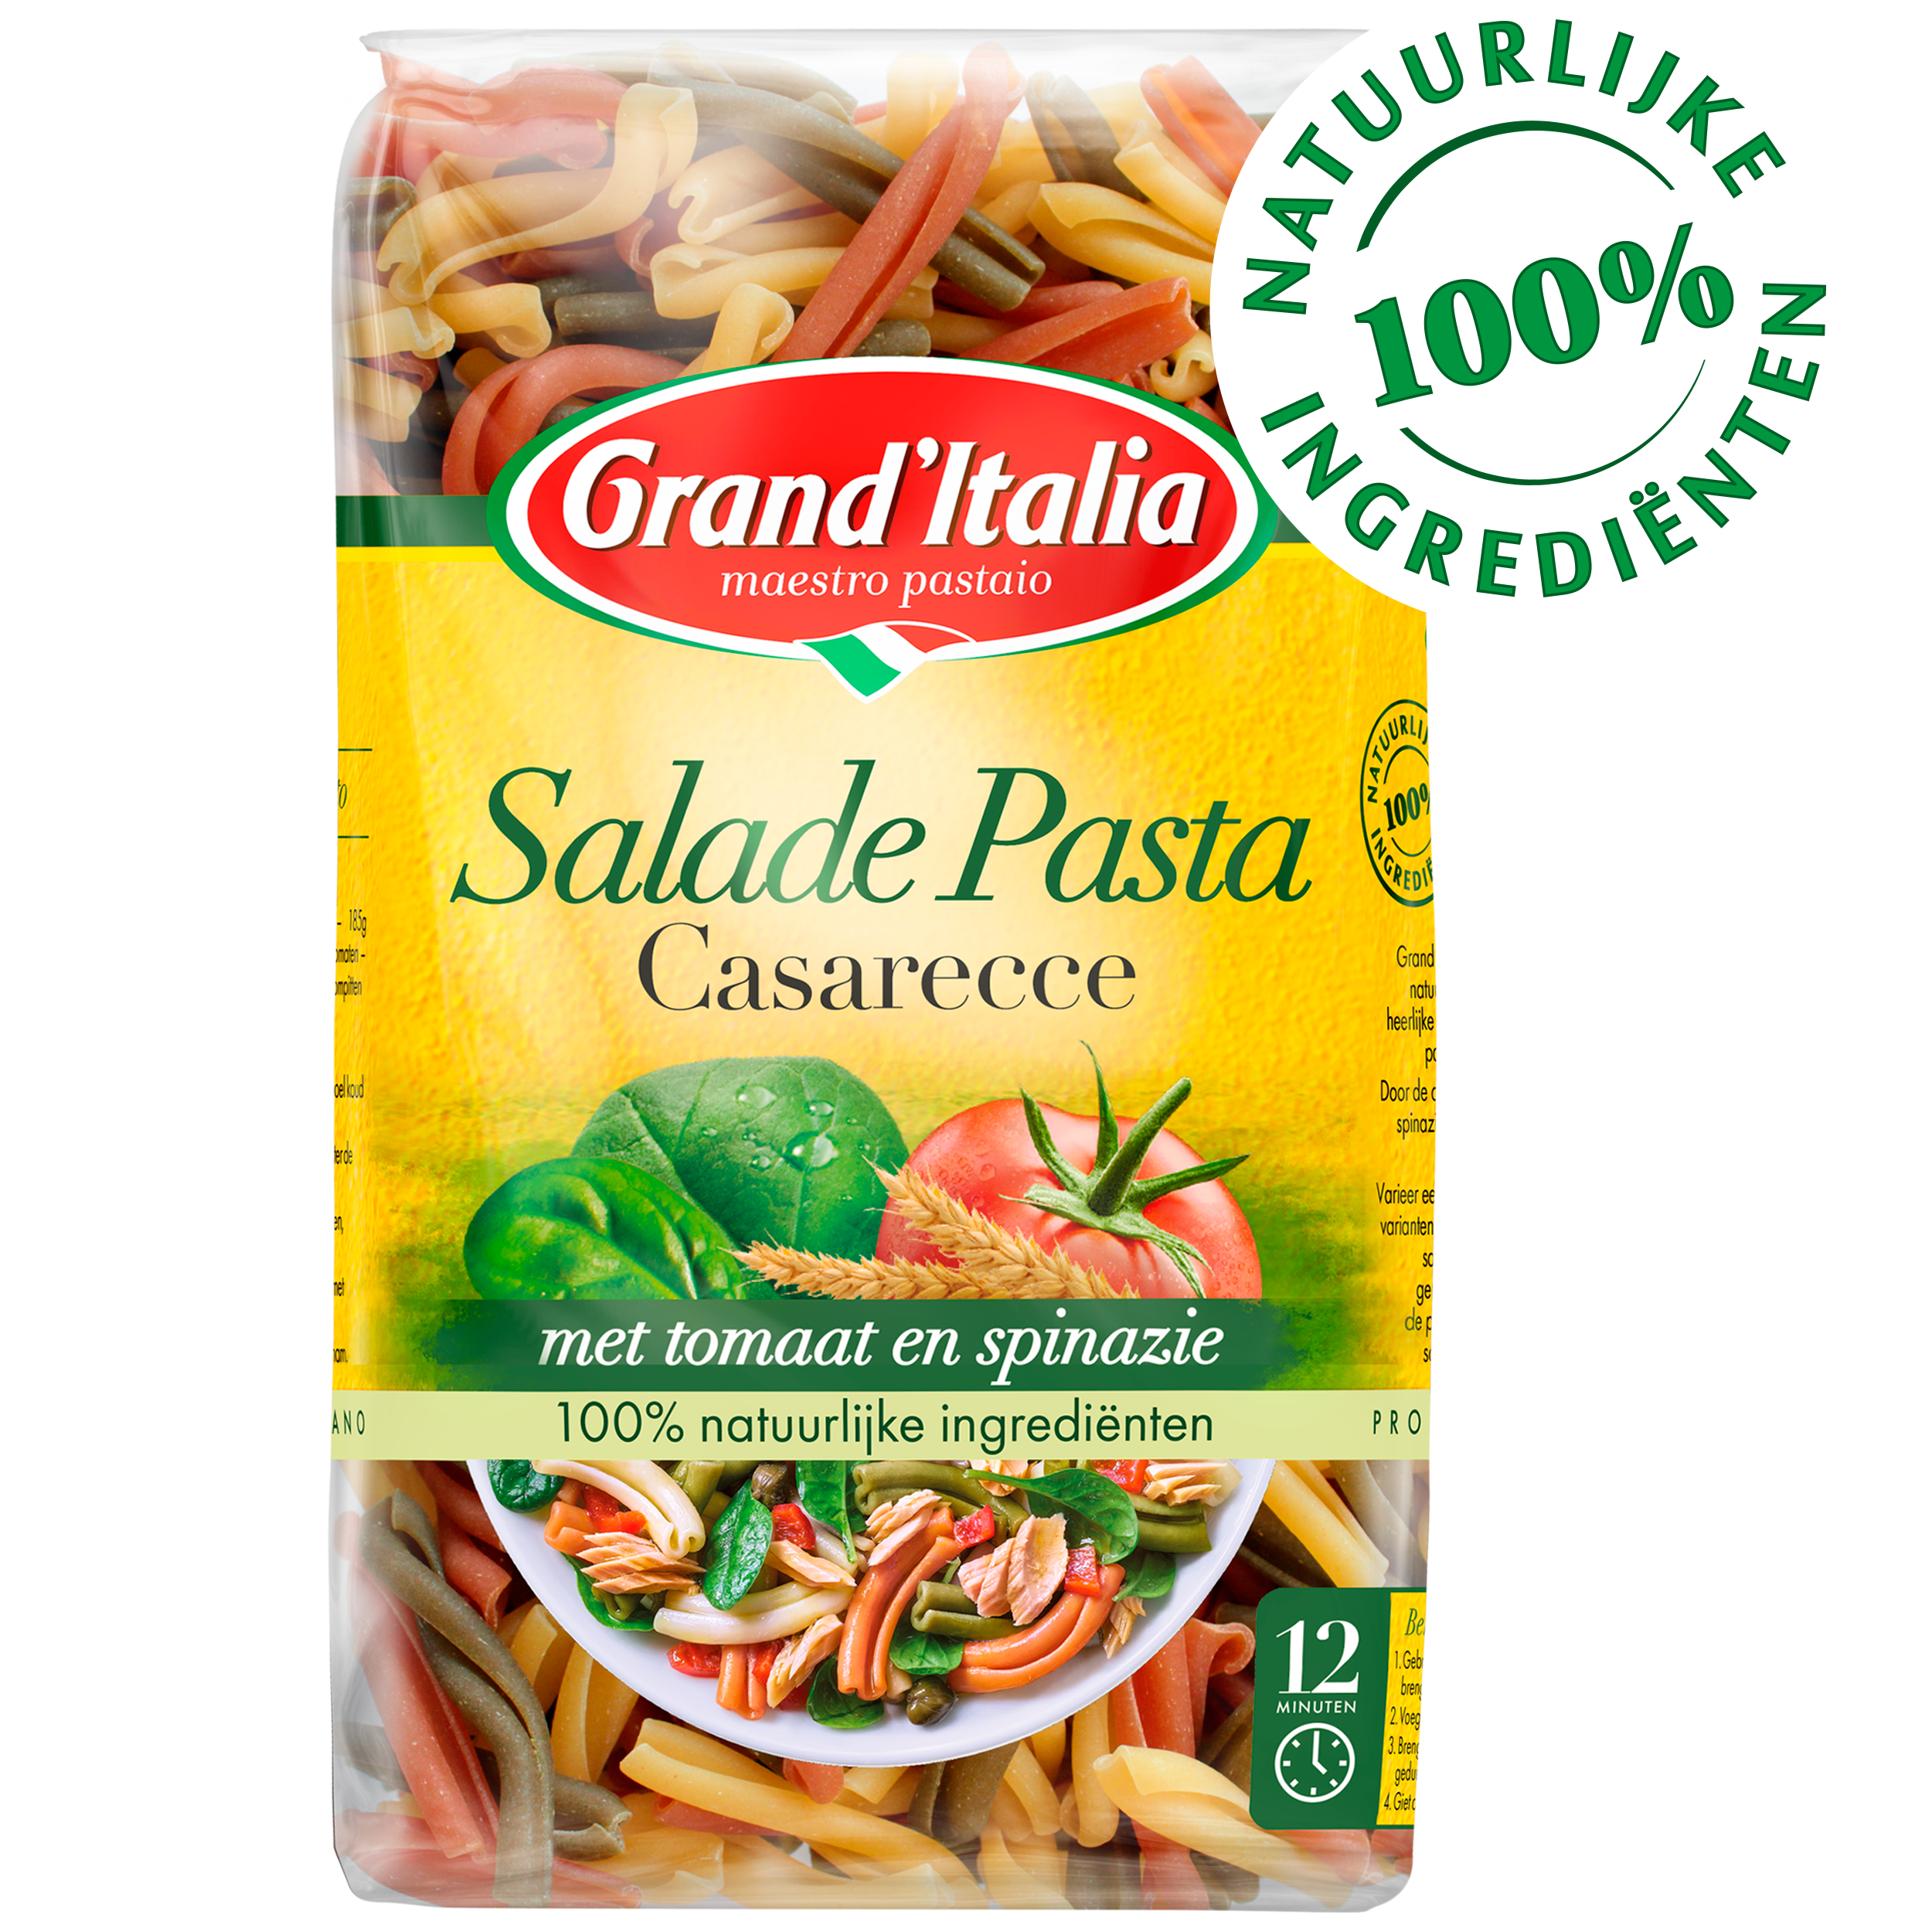 Pasta Salade Pasta Casarecce 500g claim Grand'Italia